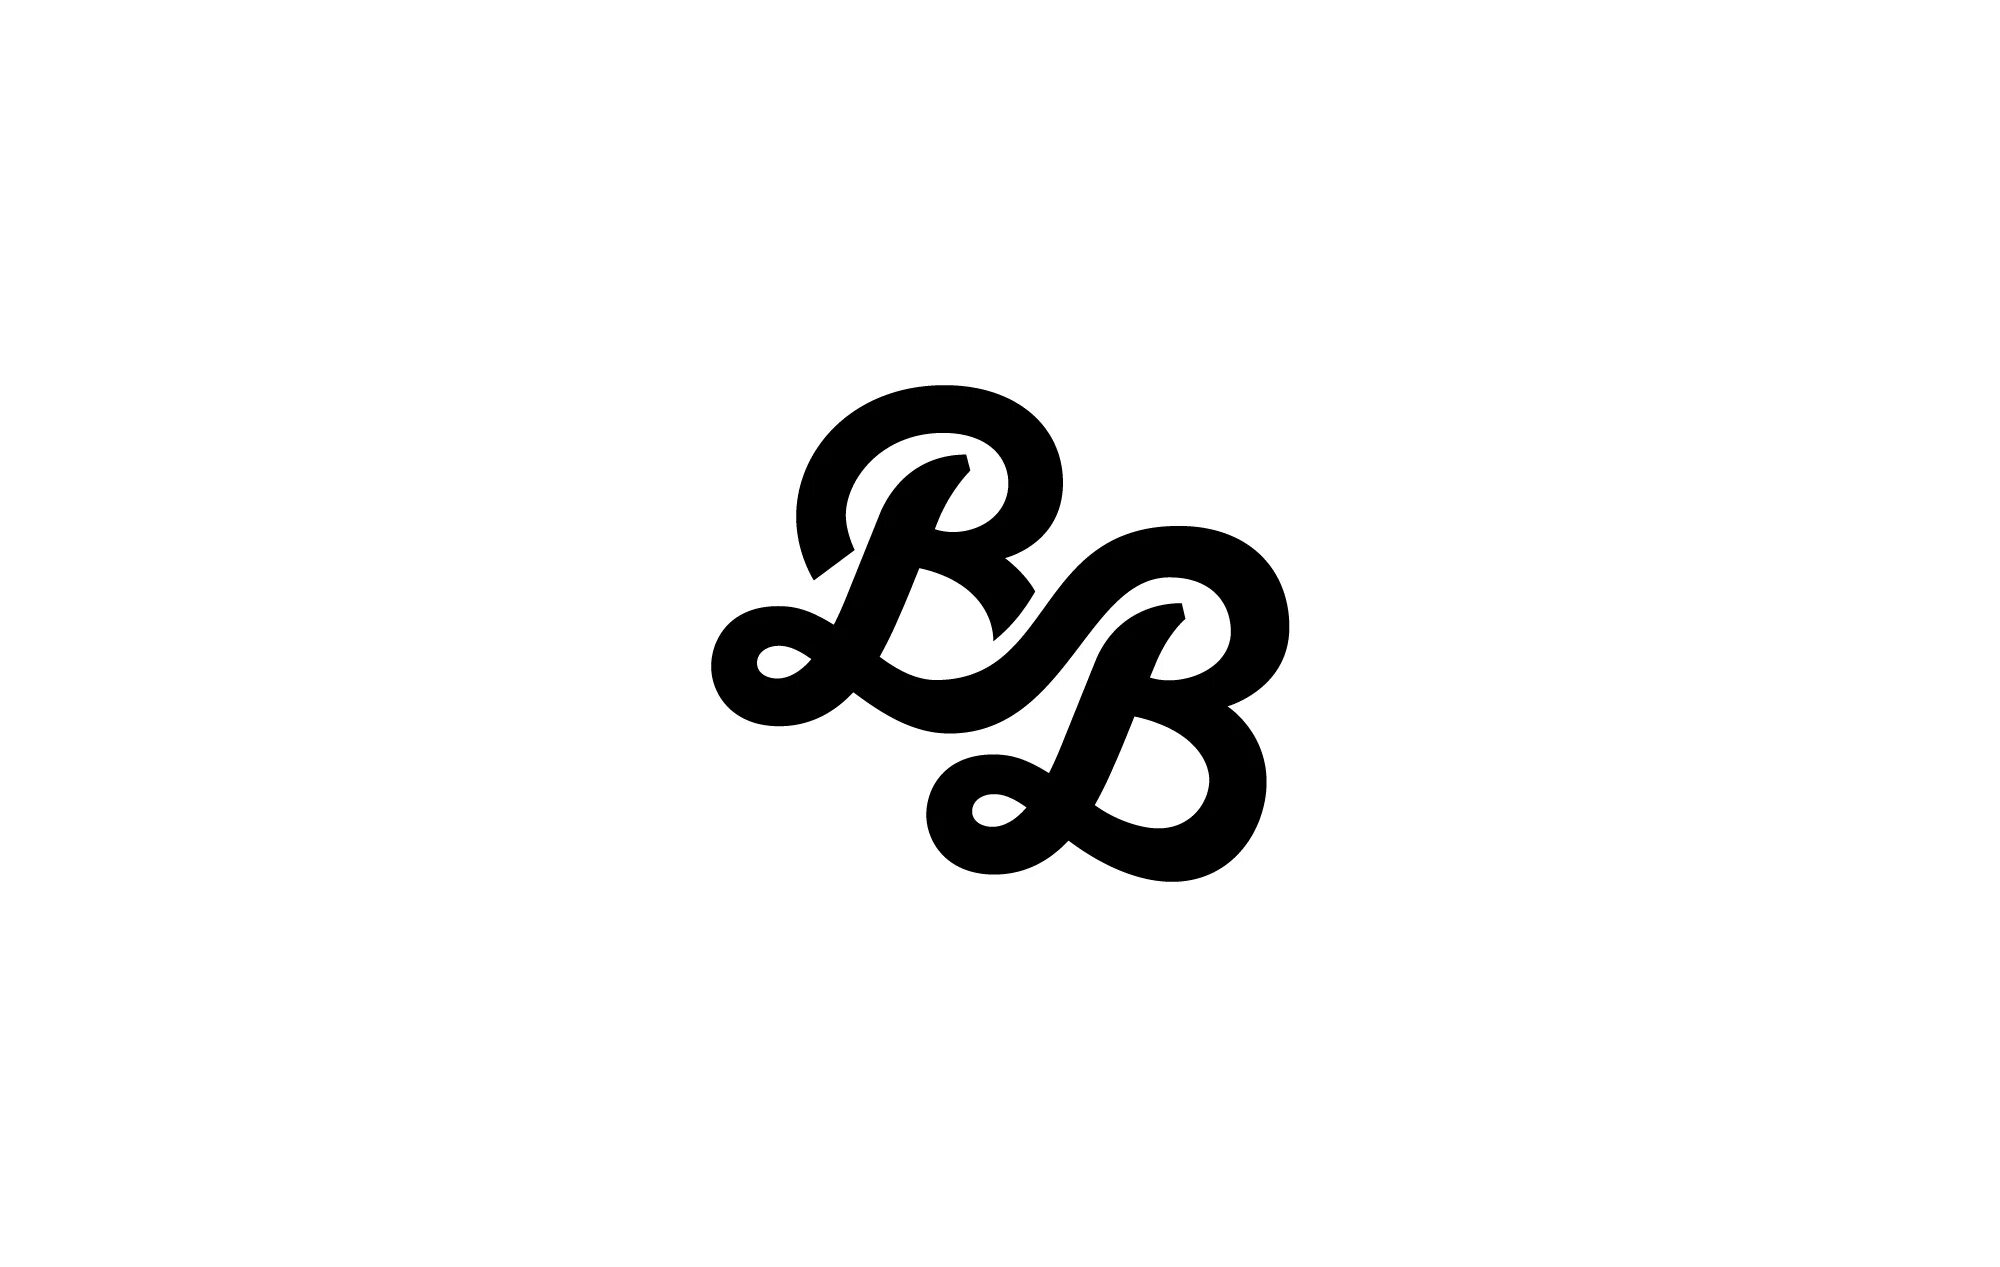 Логотип ВВ. Логотип с буквами ВВ. BB логотип бренда. Две буквы ВВ. Бб бю